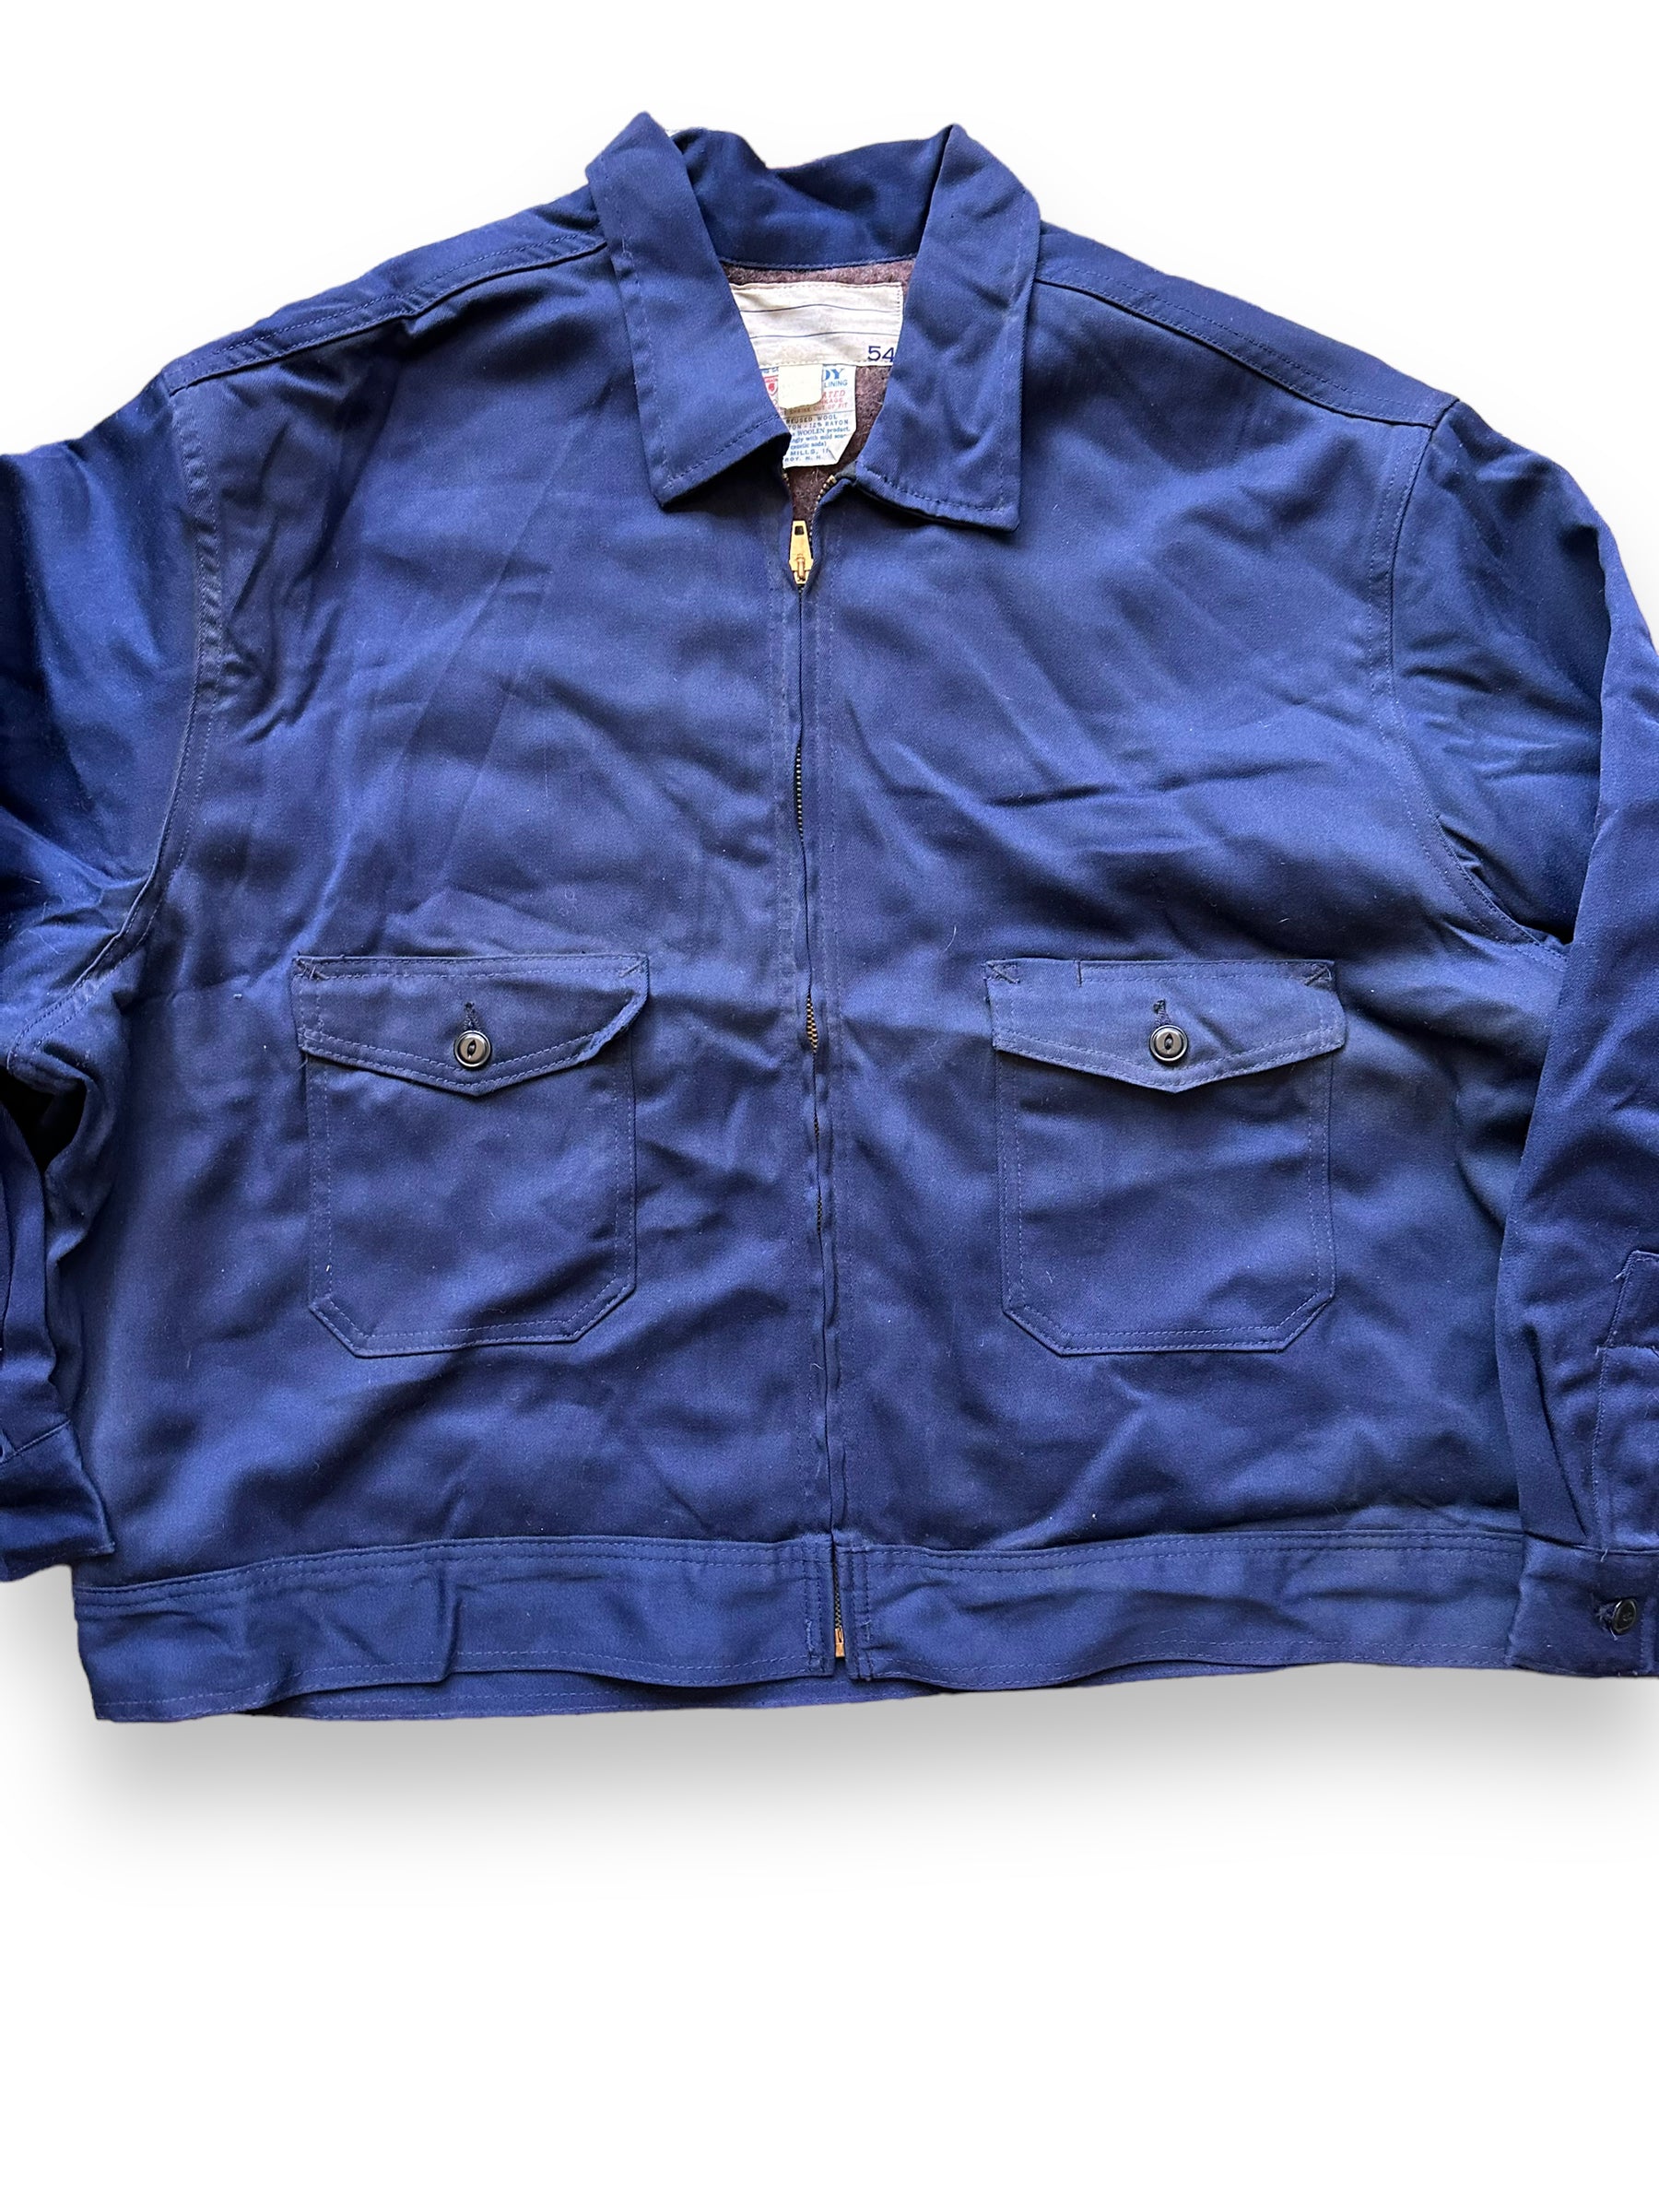 Front Detail on Vintage Blue Troy Blanket Lined Gas Station Jacket SZ 54 | Vintage Workwear Jacket Seattle | Seattle Vintage Clothing